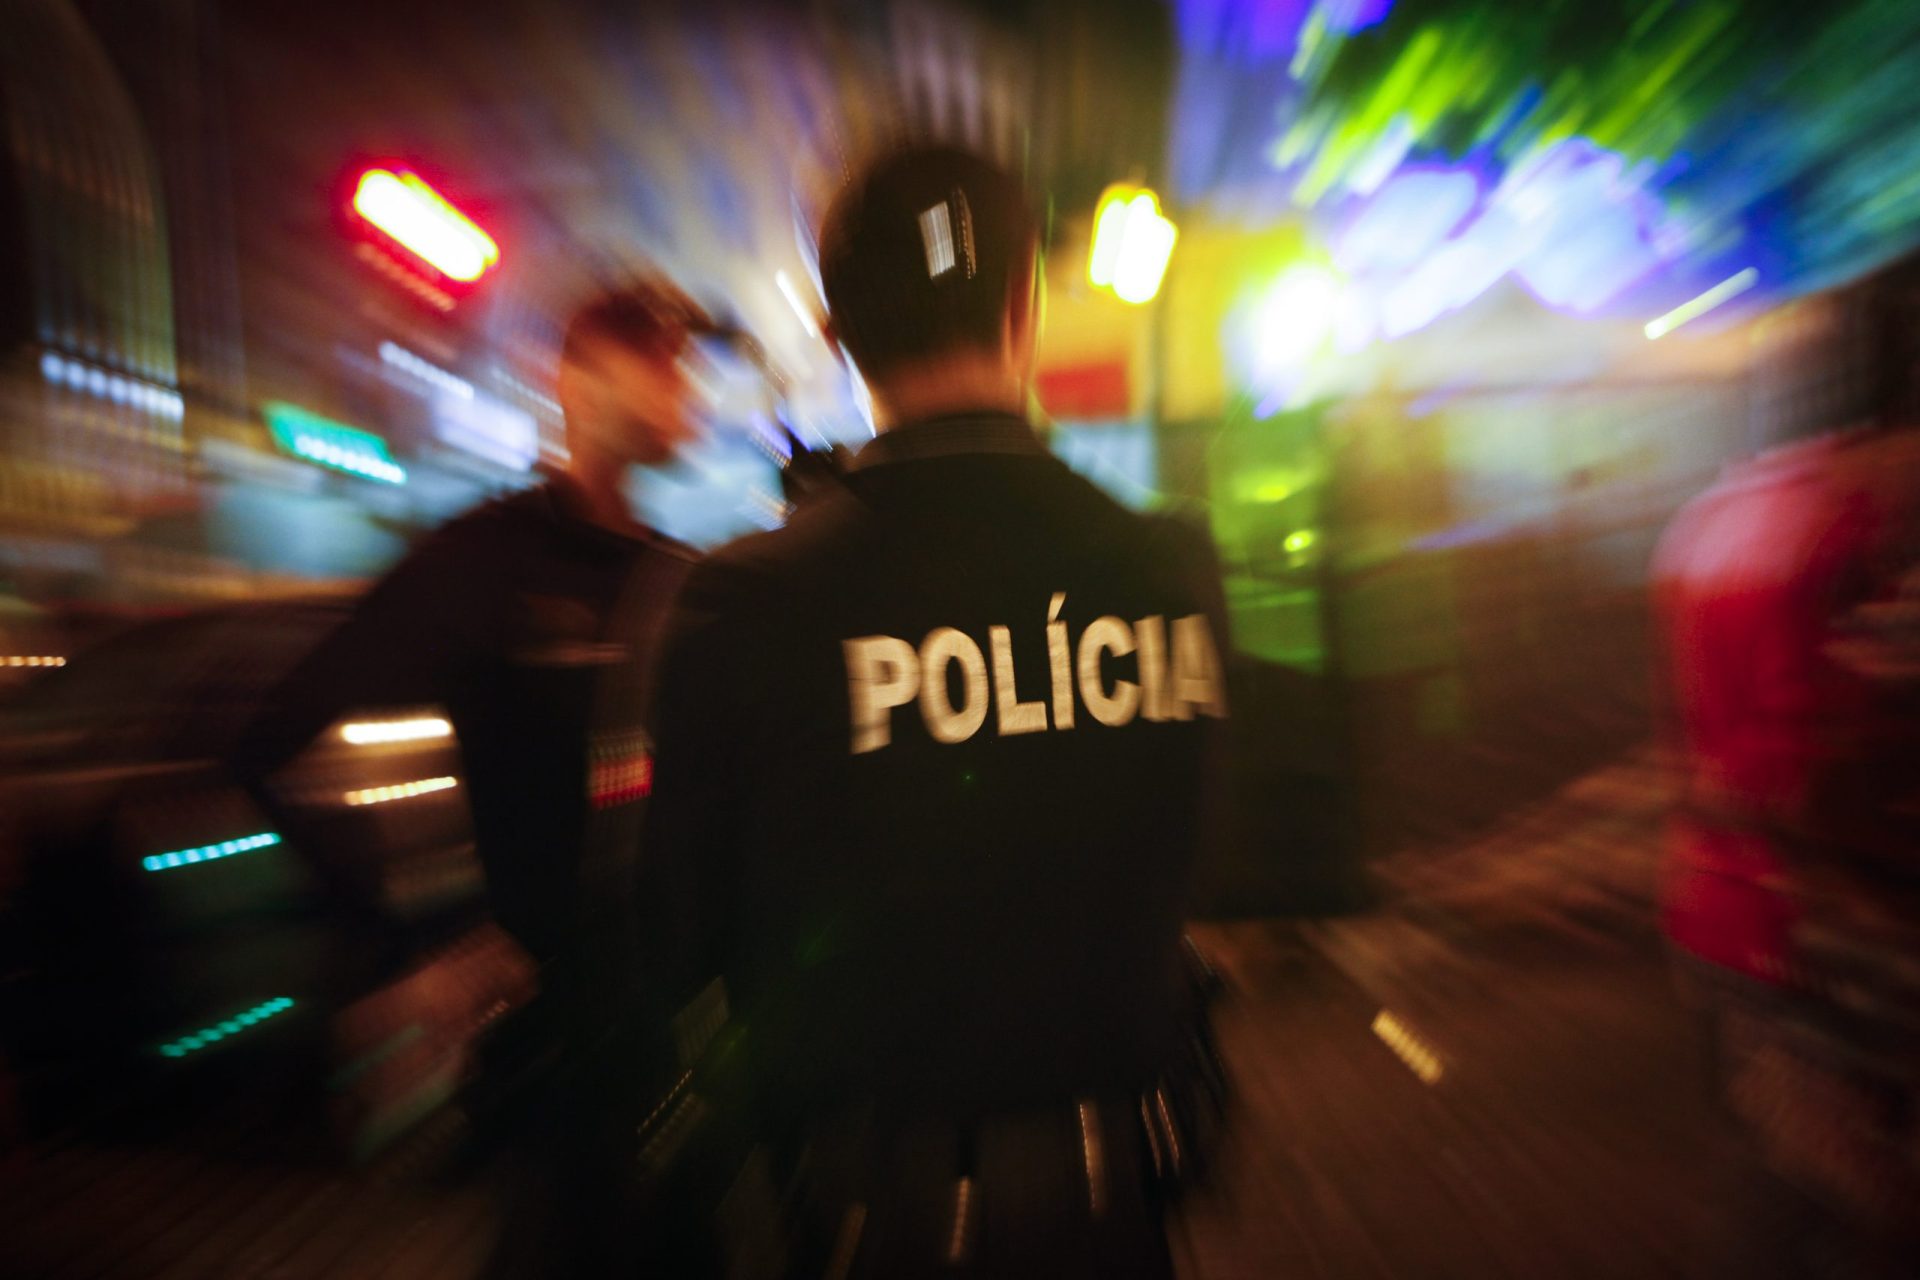 Rapaz de 15 anos apanhado com pistola carregada na Estação do Oriente em Lisboa